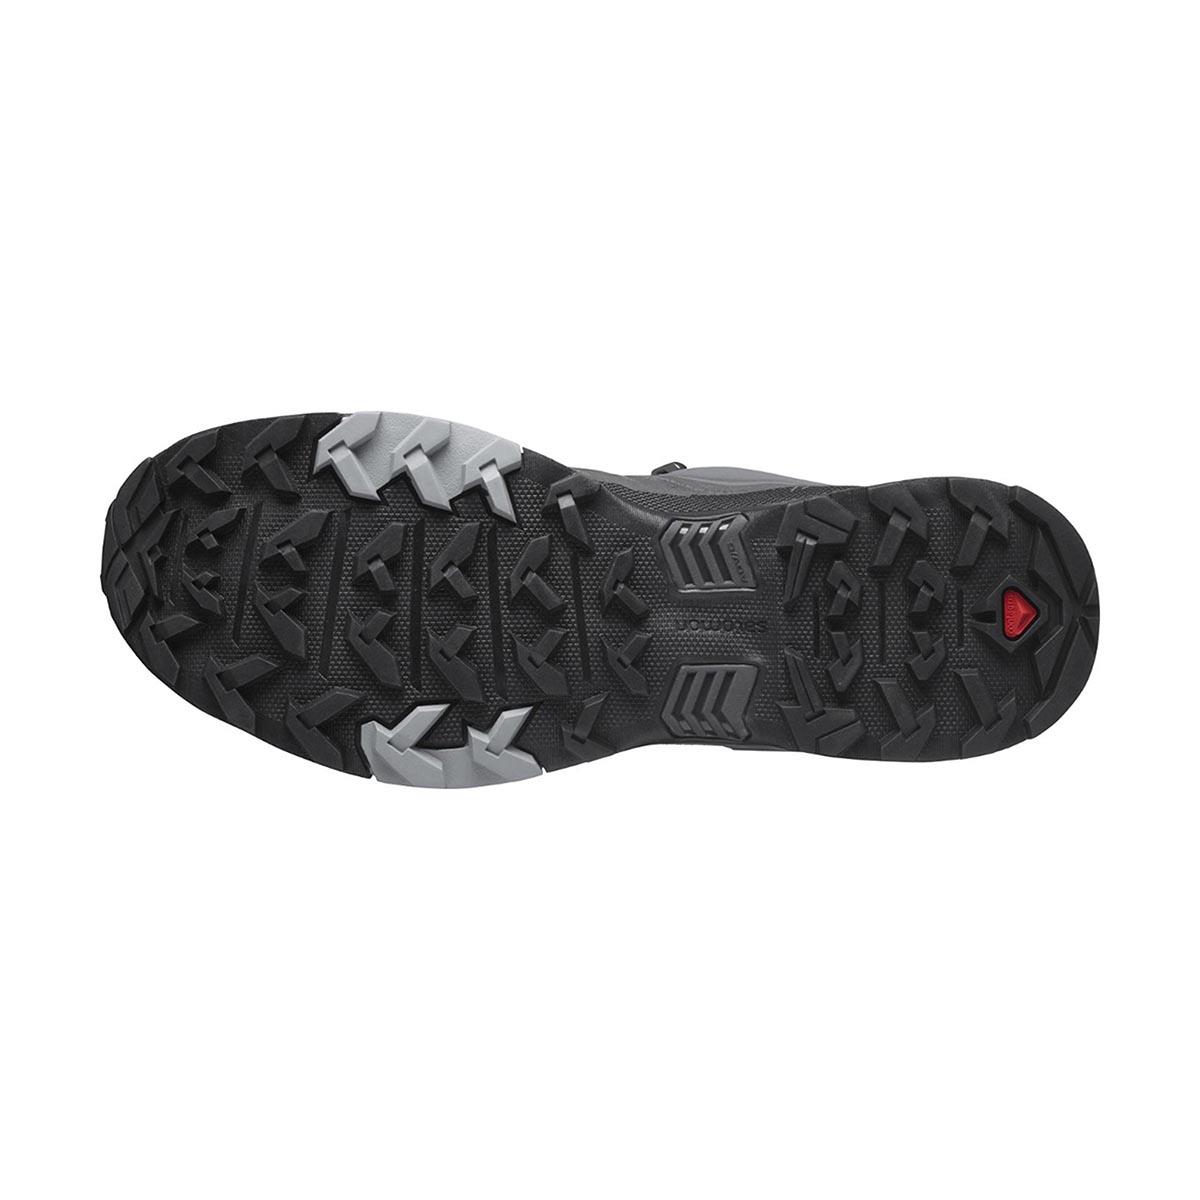  Salomon X Ultra 4 Gtx Erkek Outdoor Ayakkabı L41287000